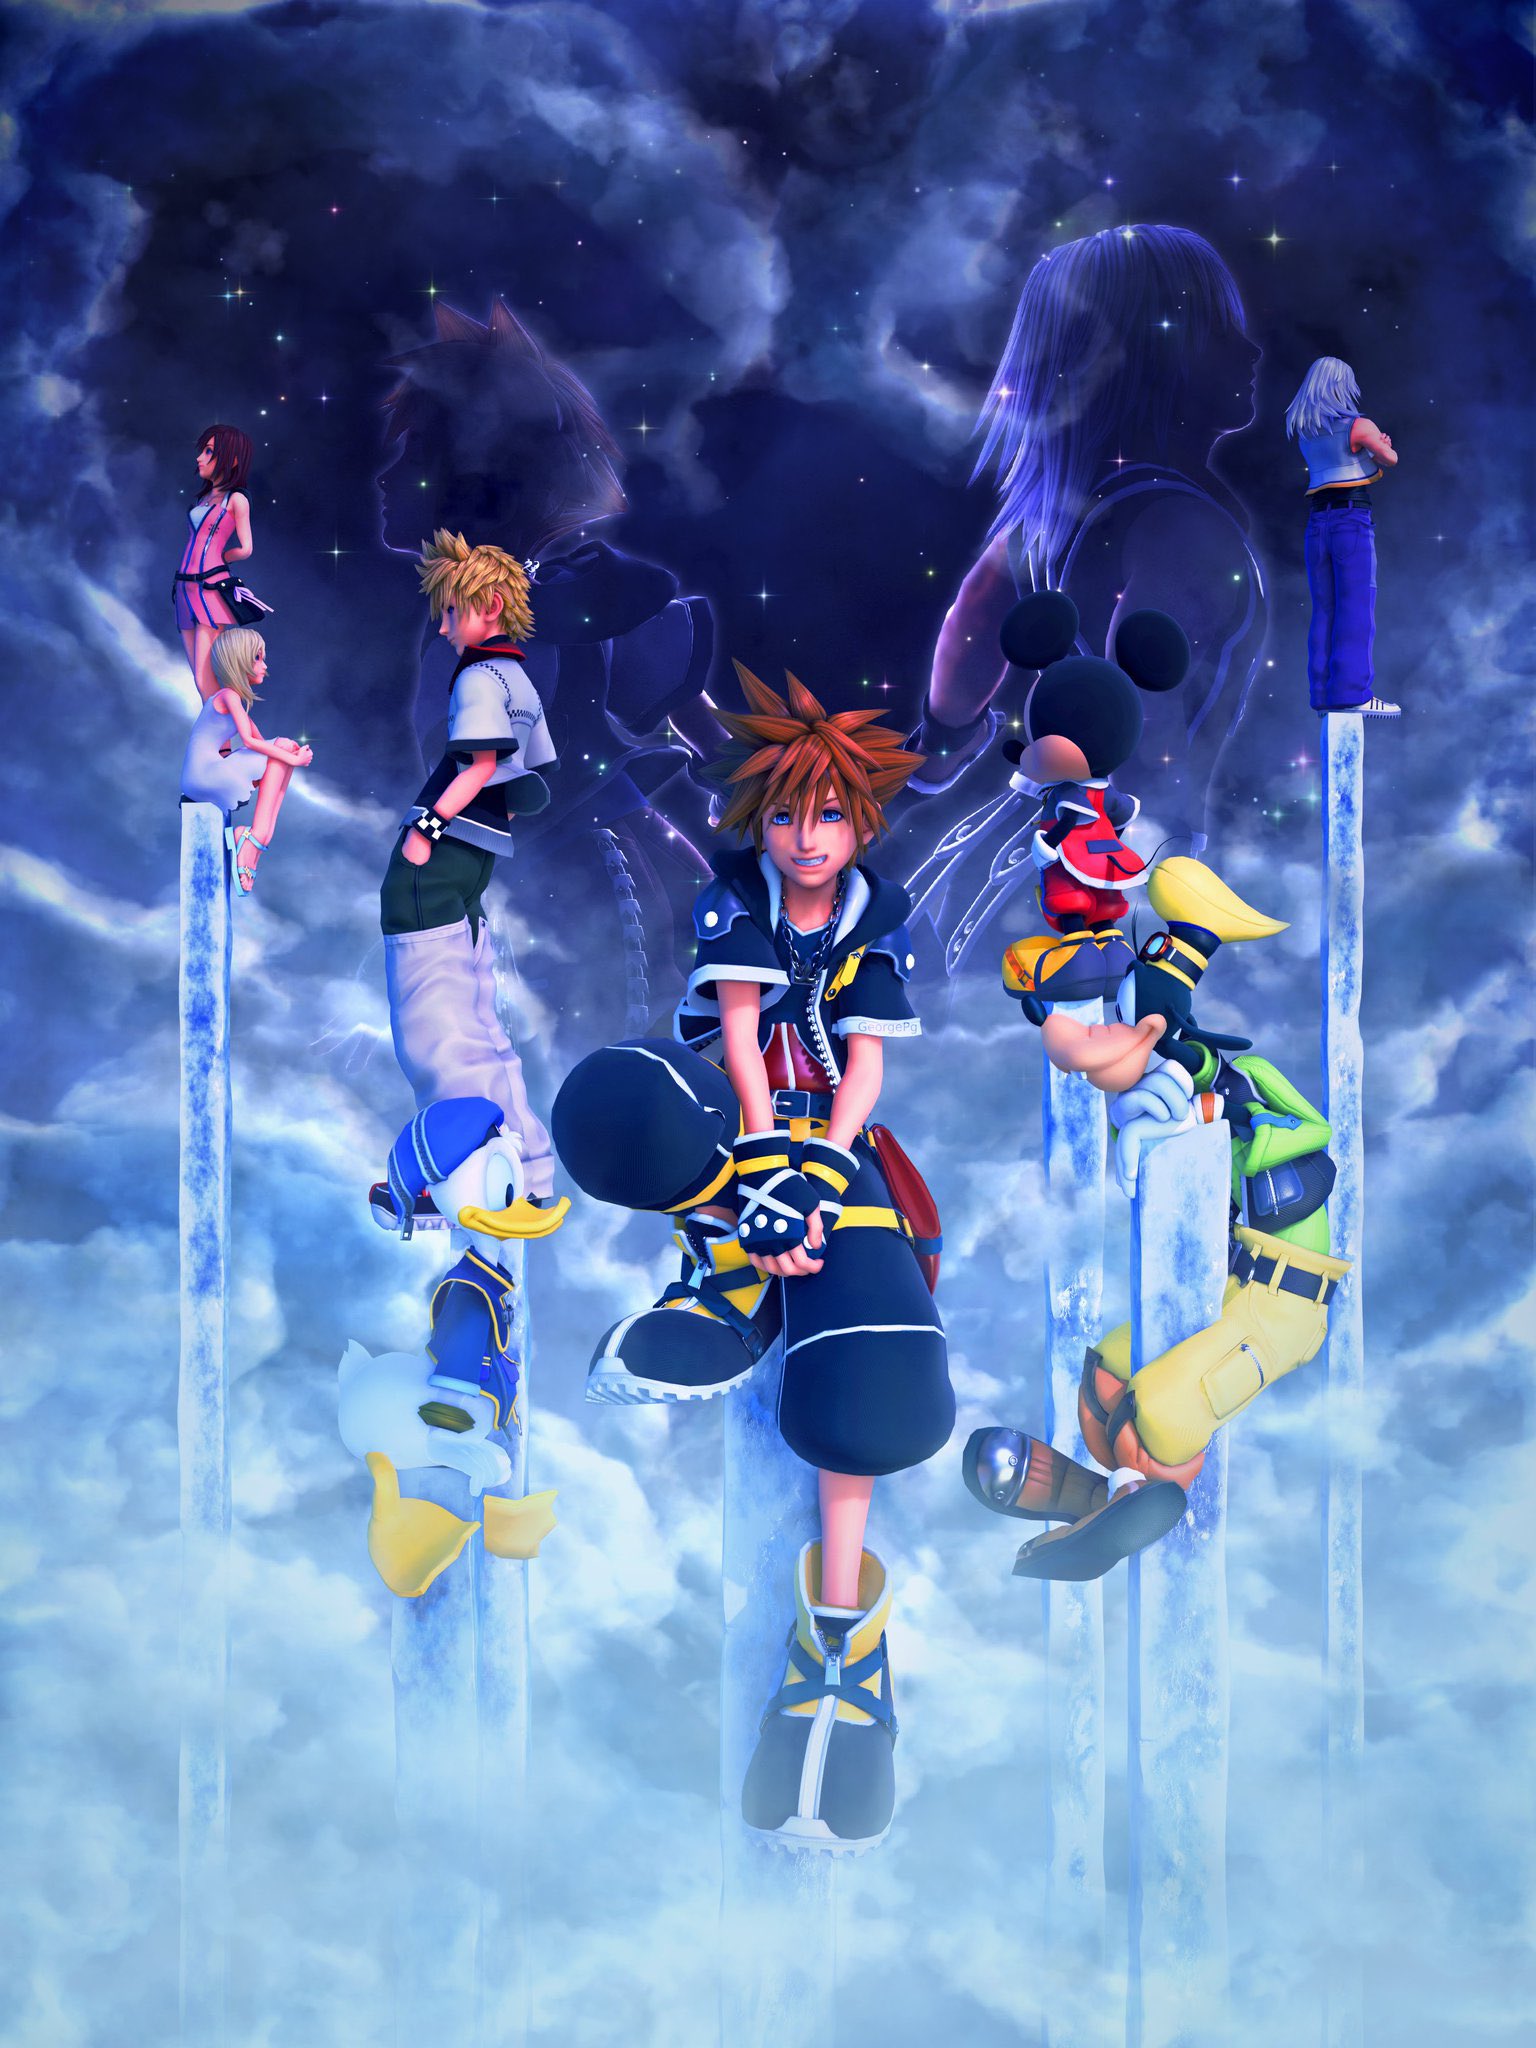 Kingdom Hearts llegará a PC el 13 de junio 9